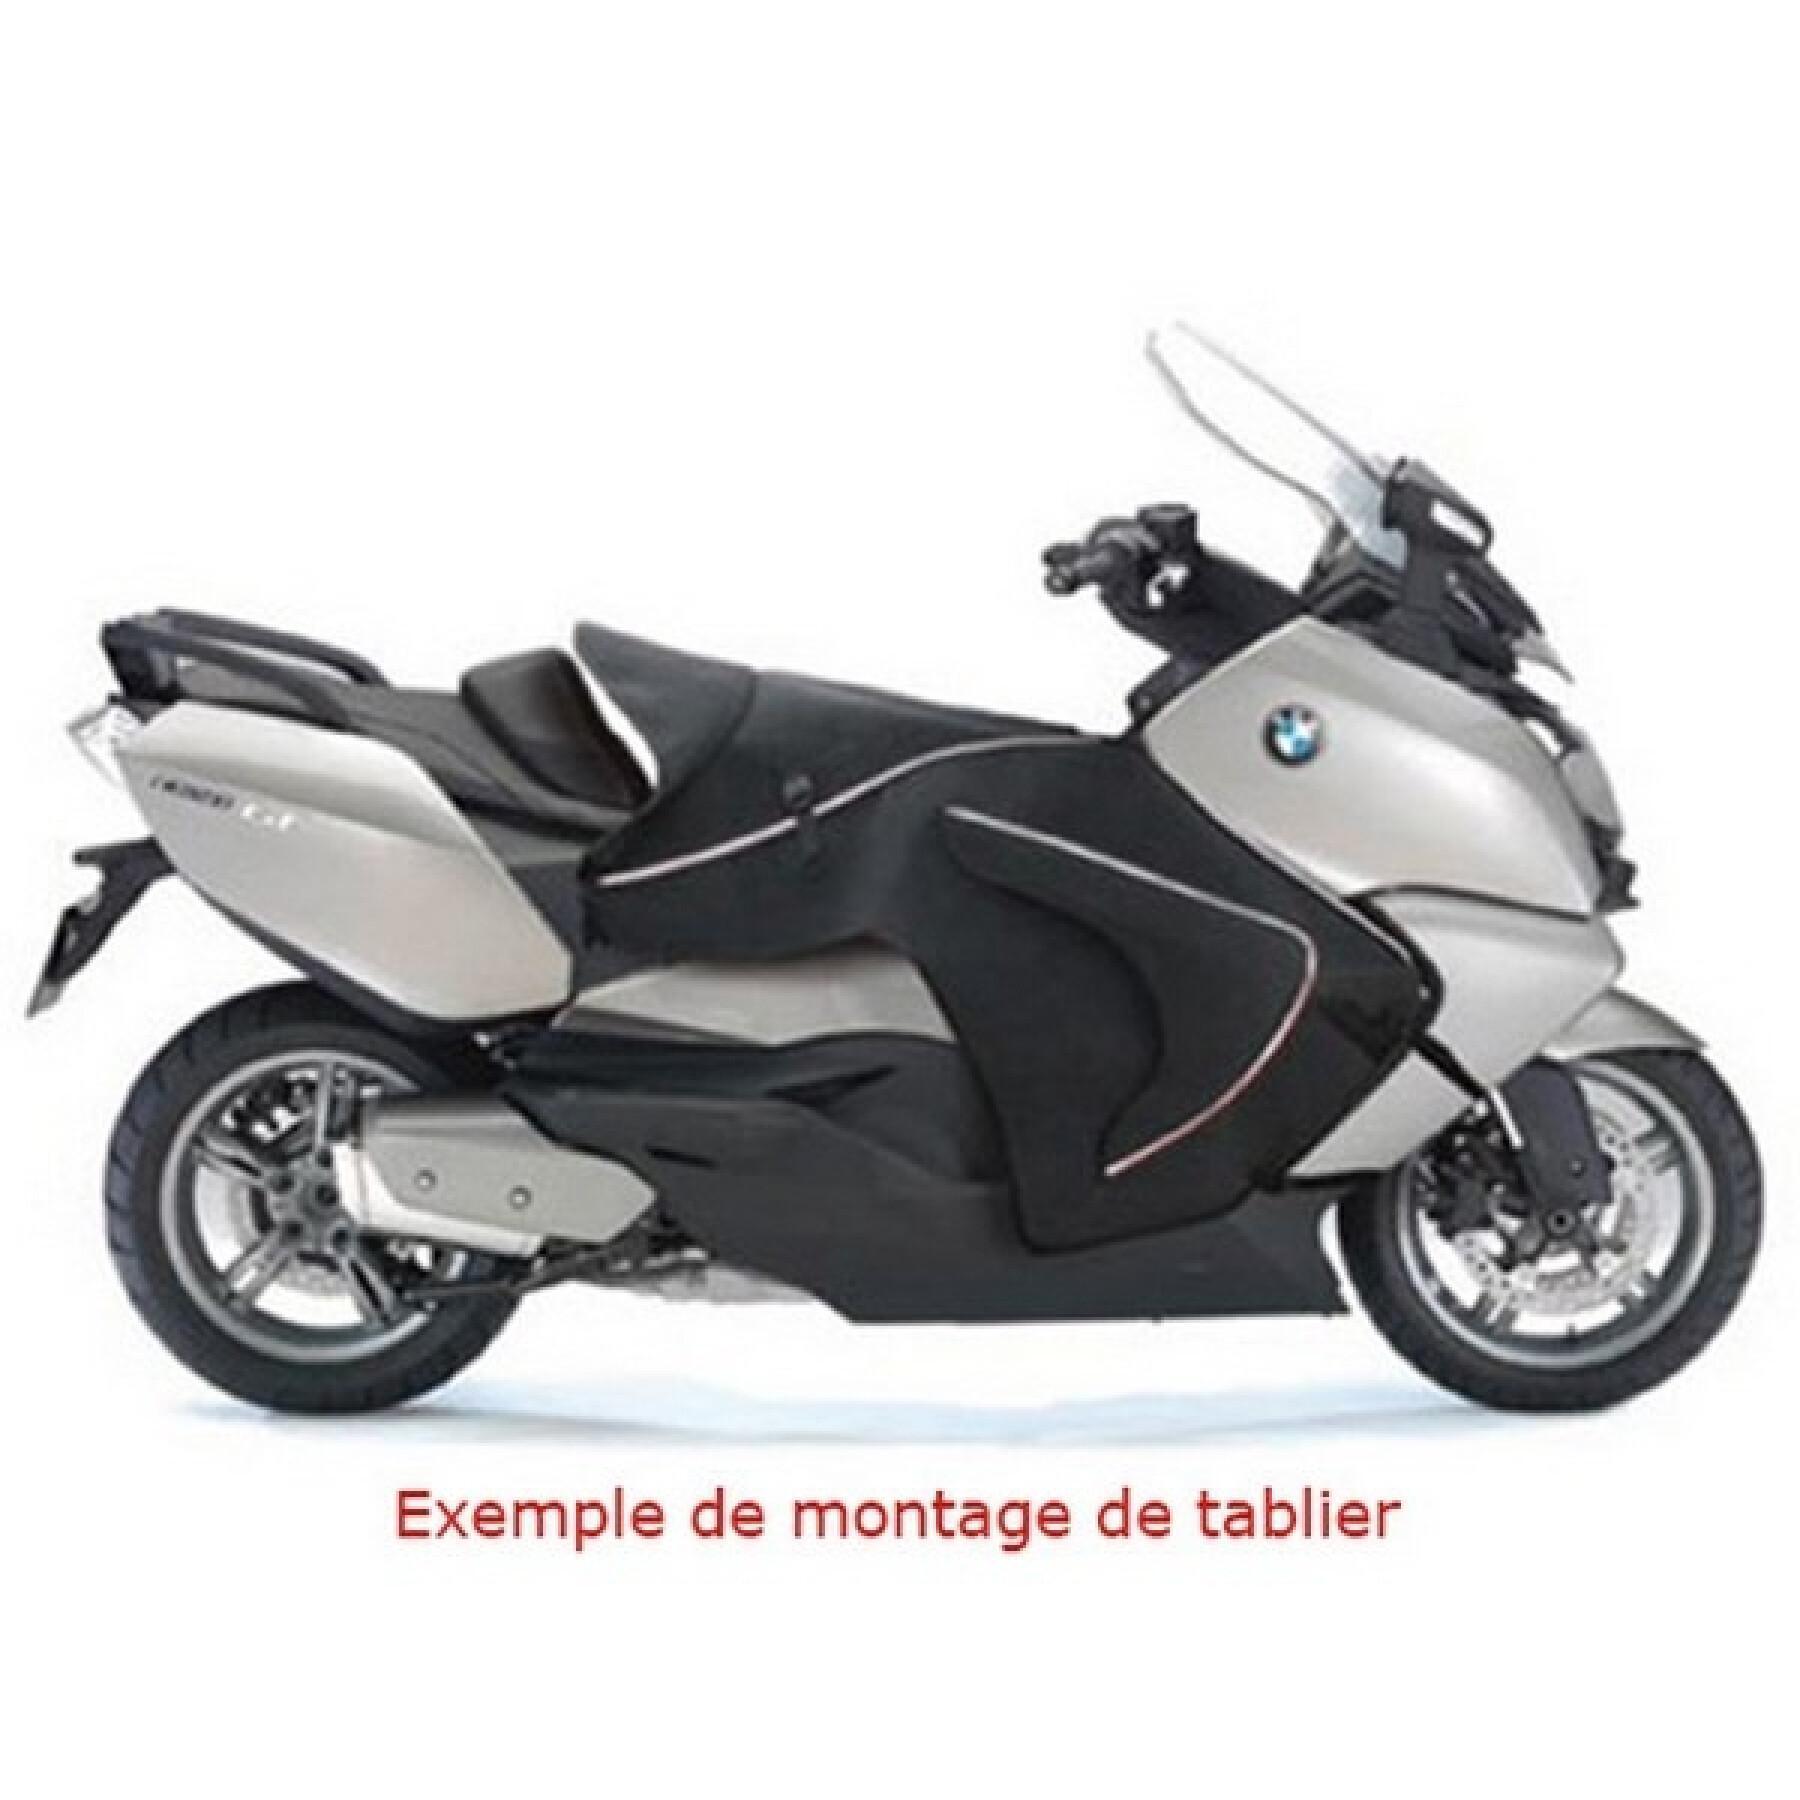 Delantal de moto Bagster Briant Honda Gl 1800 2001-2011